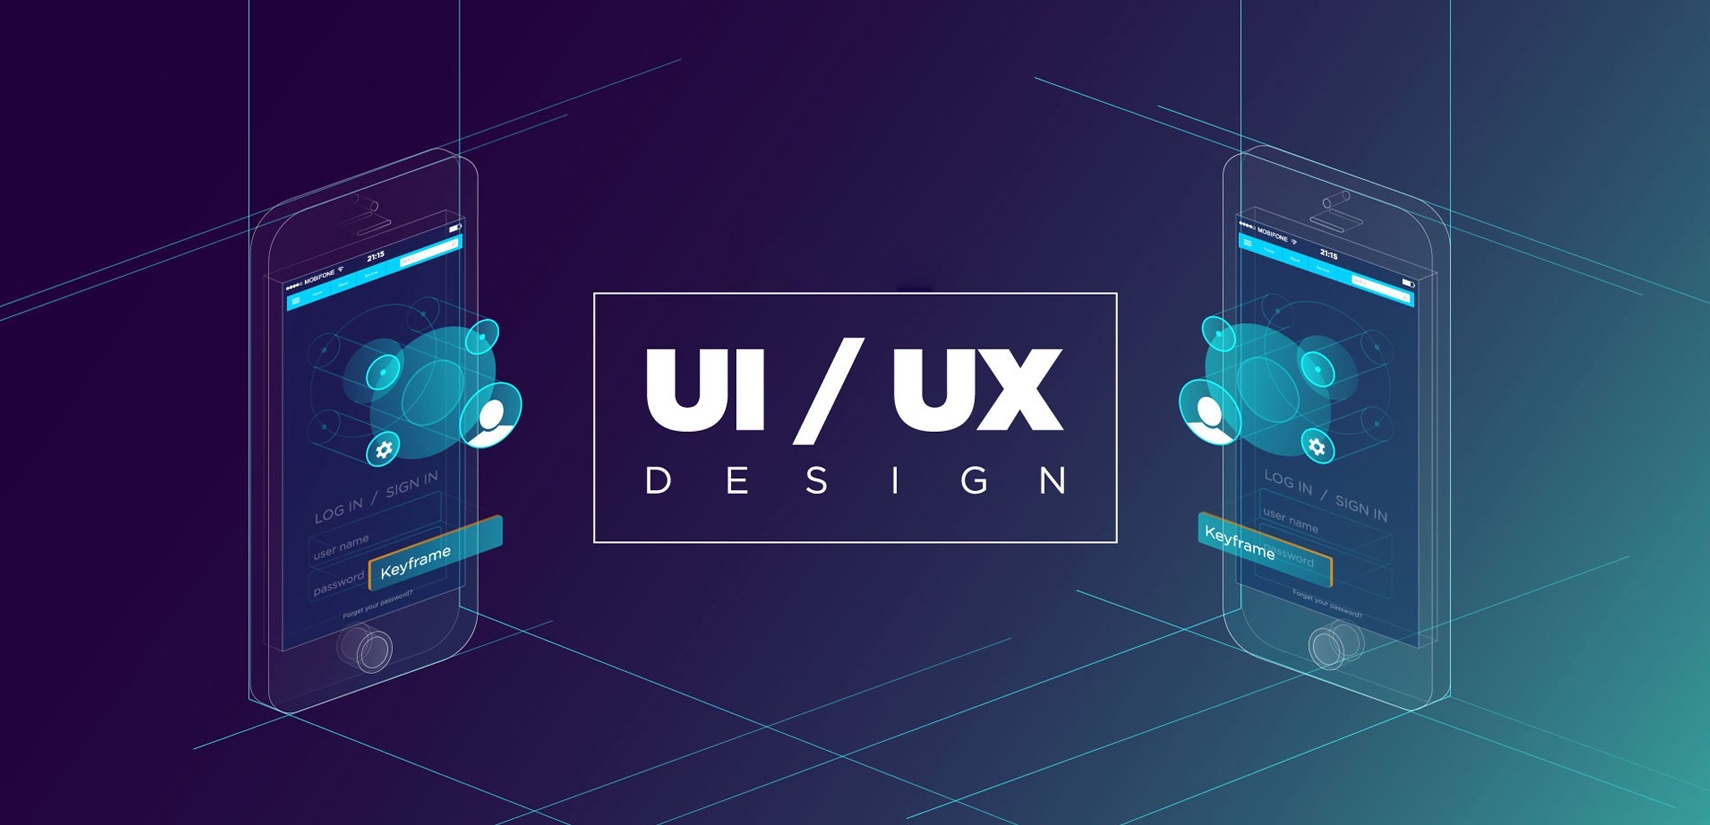 Yeni Başlayanlar İçin En İyi UX/UI Tasarım Araçları